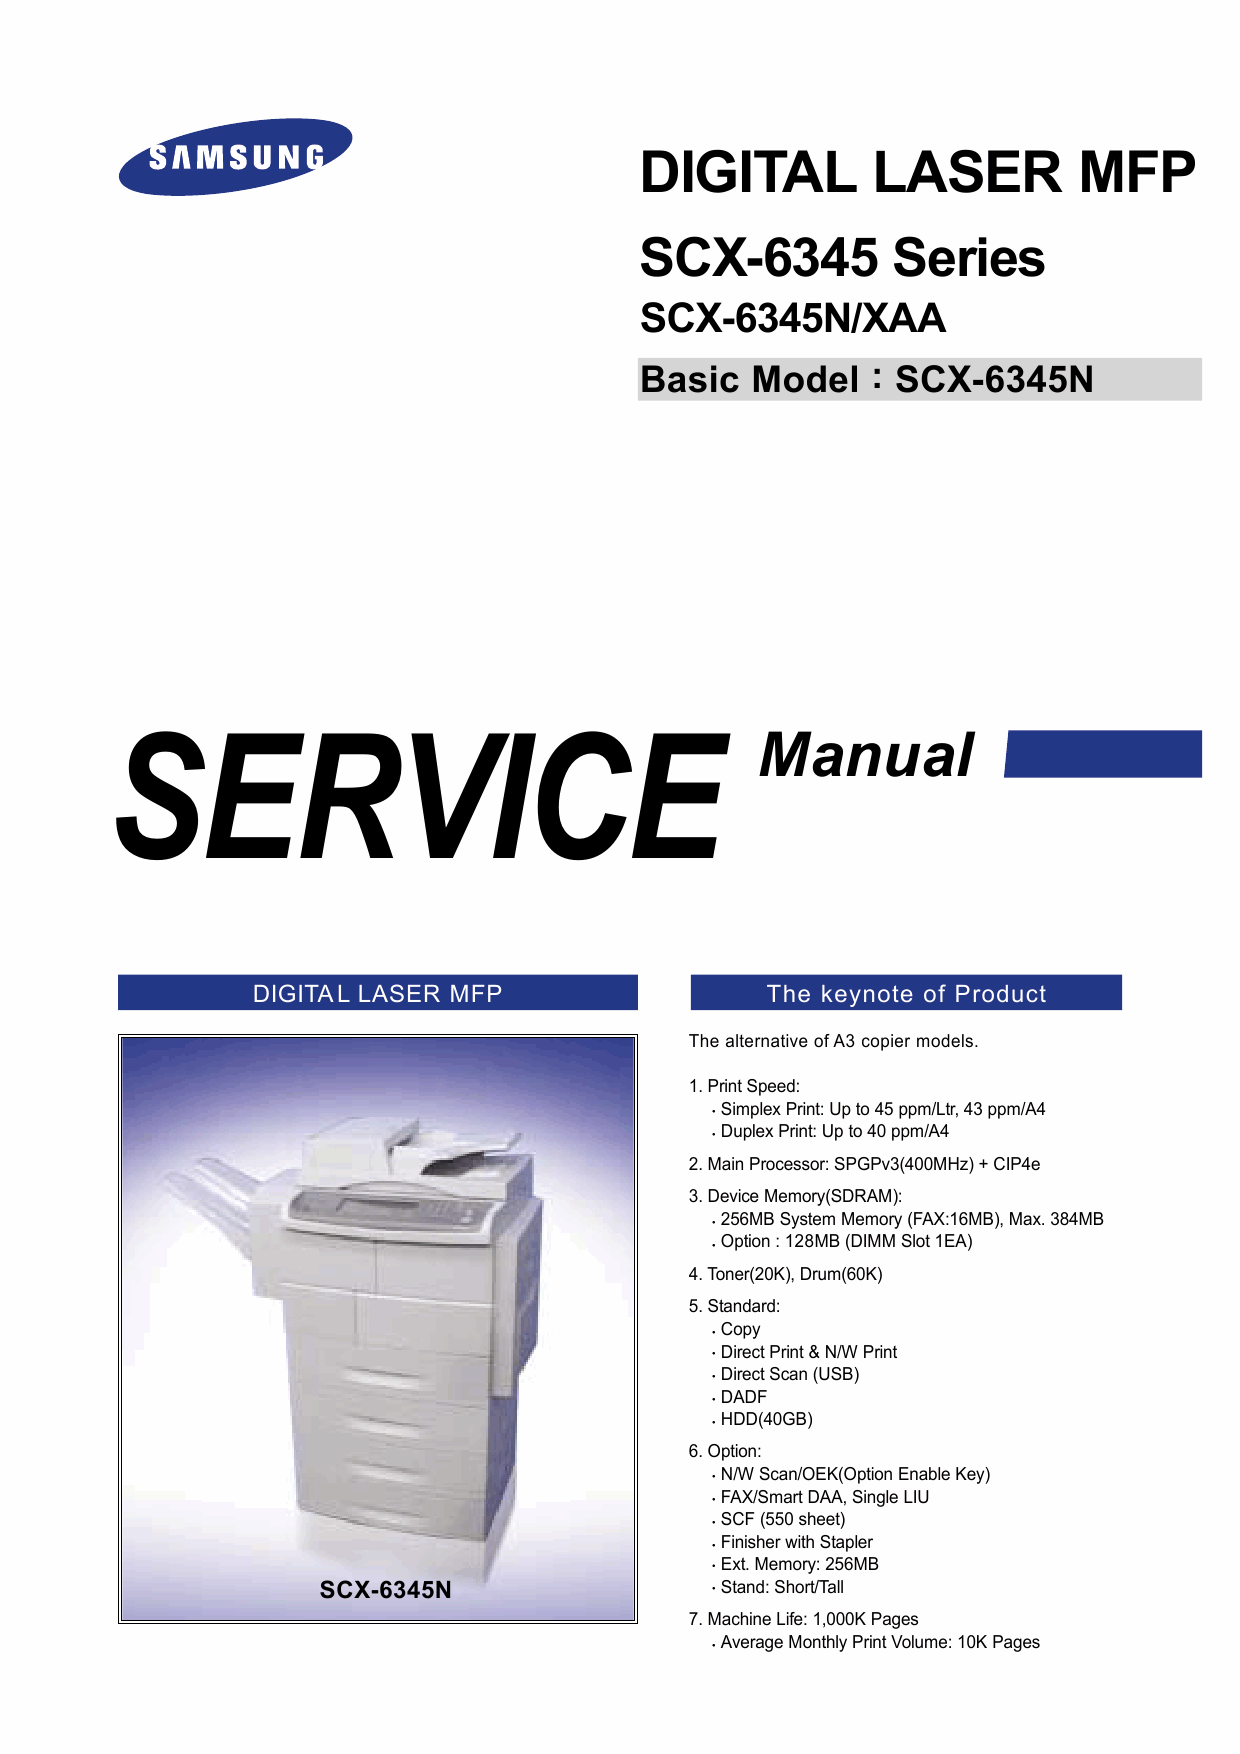 Samsung Digital-Laser-MFP SCX-6345N XAA Parts and Service Manual-1